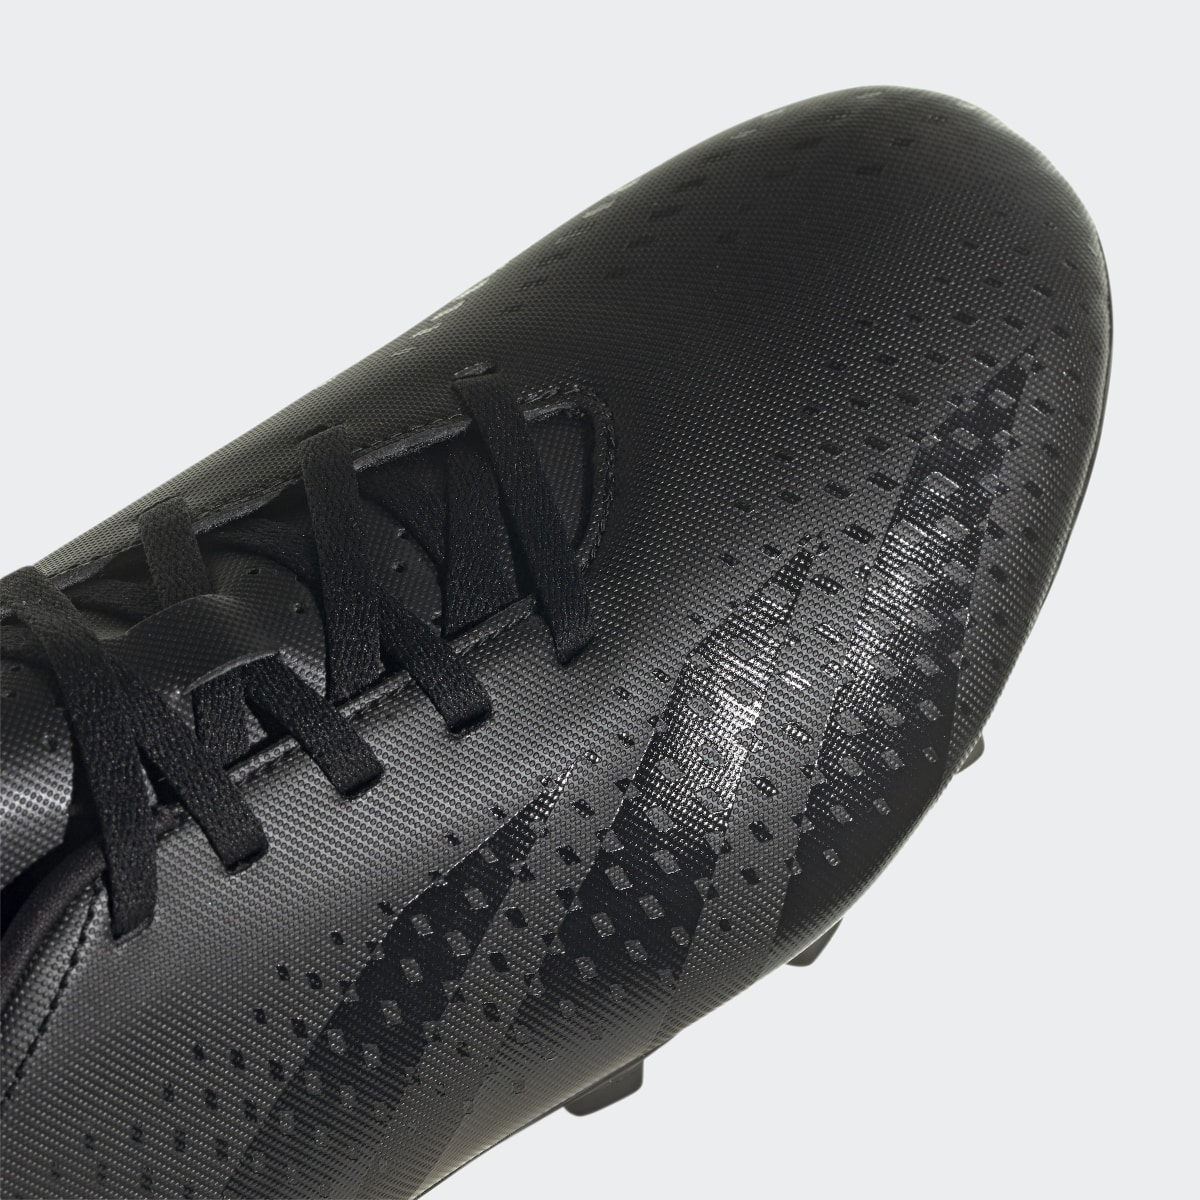 Adidas Scarpe da calcio Predator Accuracy.4 Flexible Ground. 9